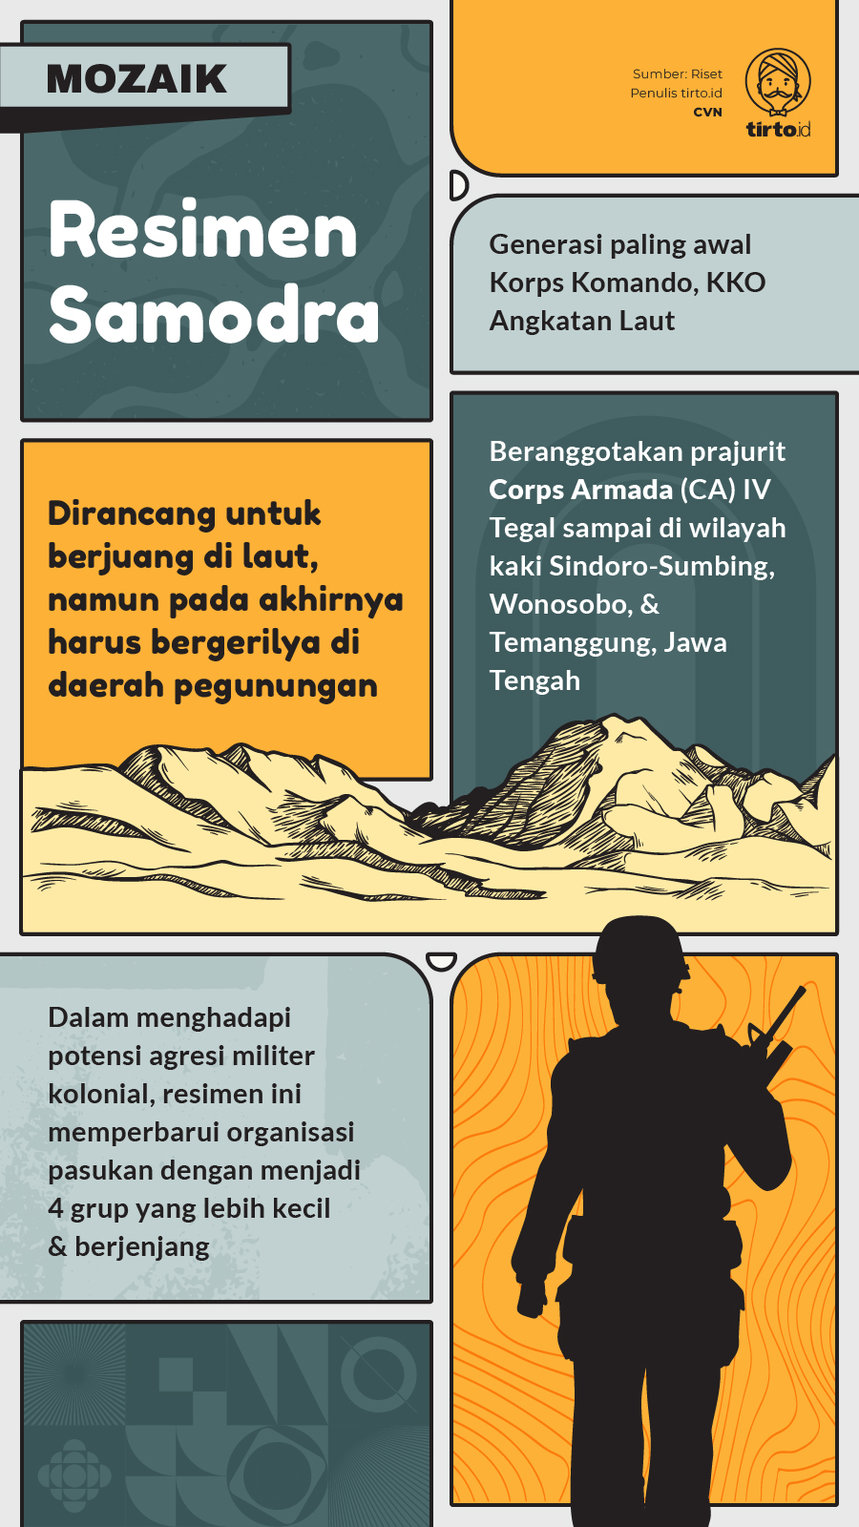 Infografik Mozaik Resimen Samodra